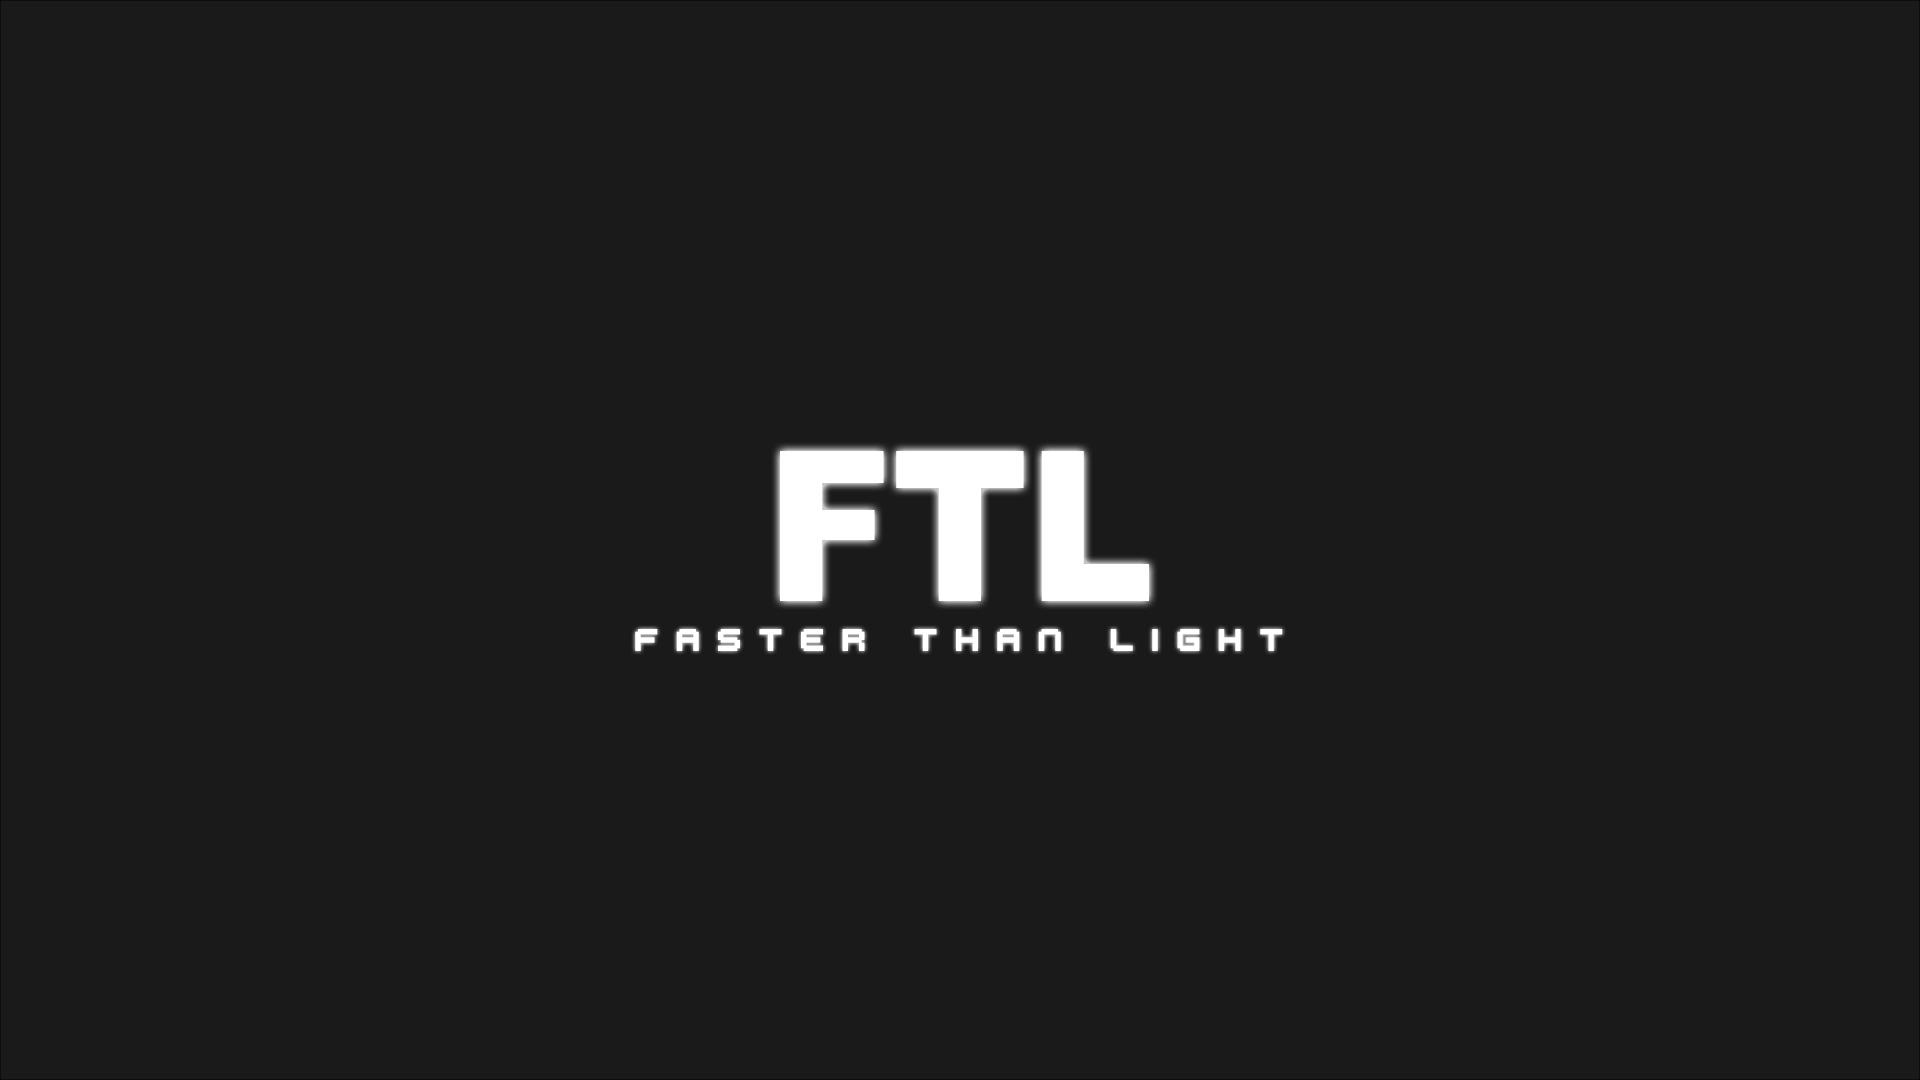 ftl faster than light logo